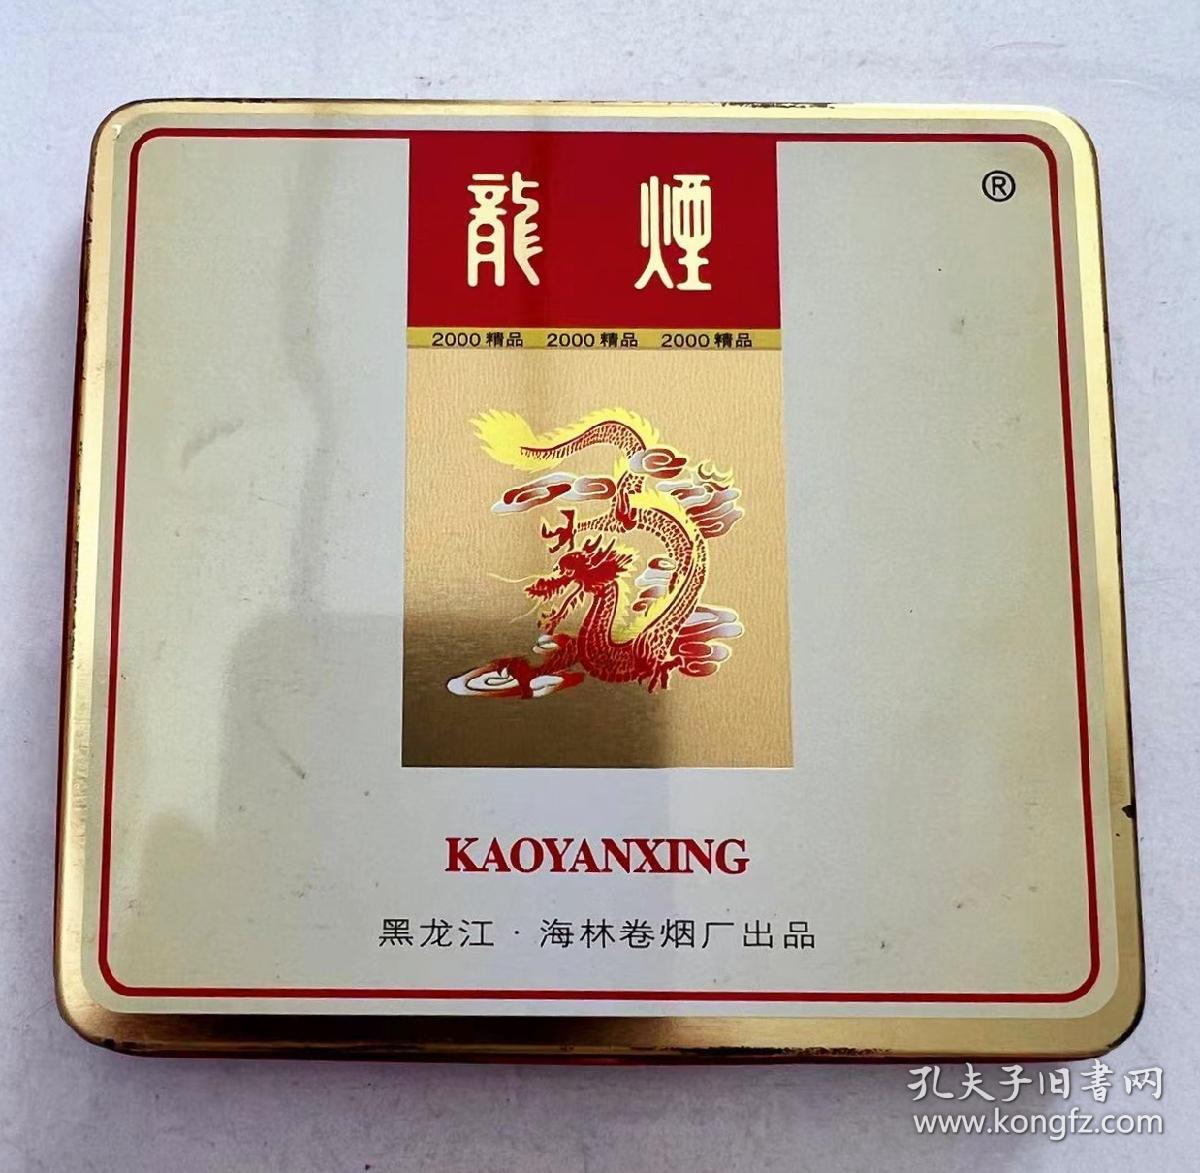 龙烟铁盒、黑龙江省海林县卷烟厂出品！ 东北龙烟当年都是纸盒的 铁盒的极为少见！